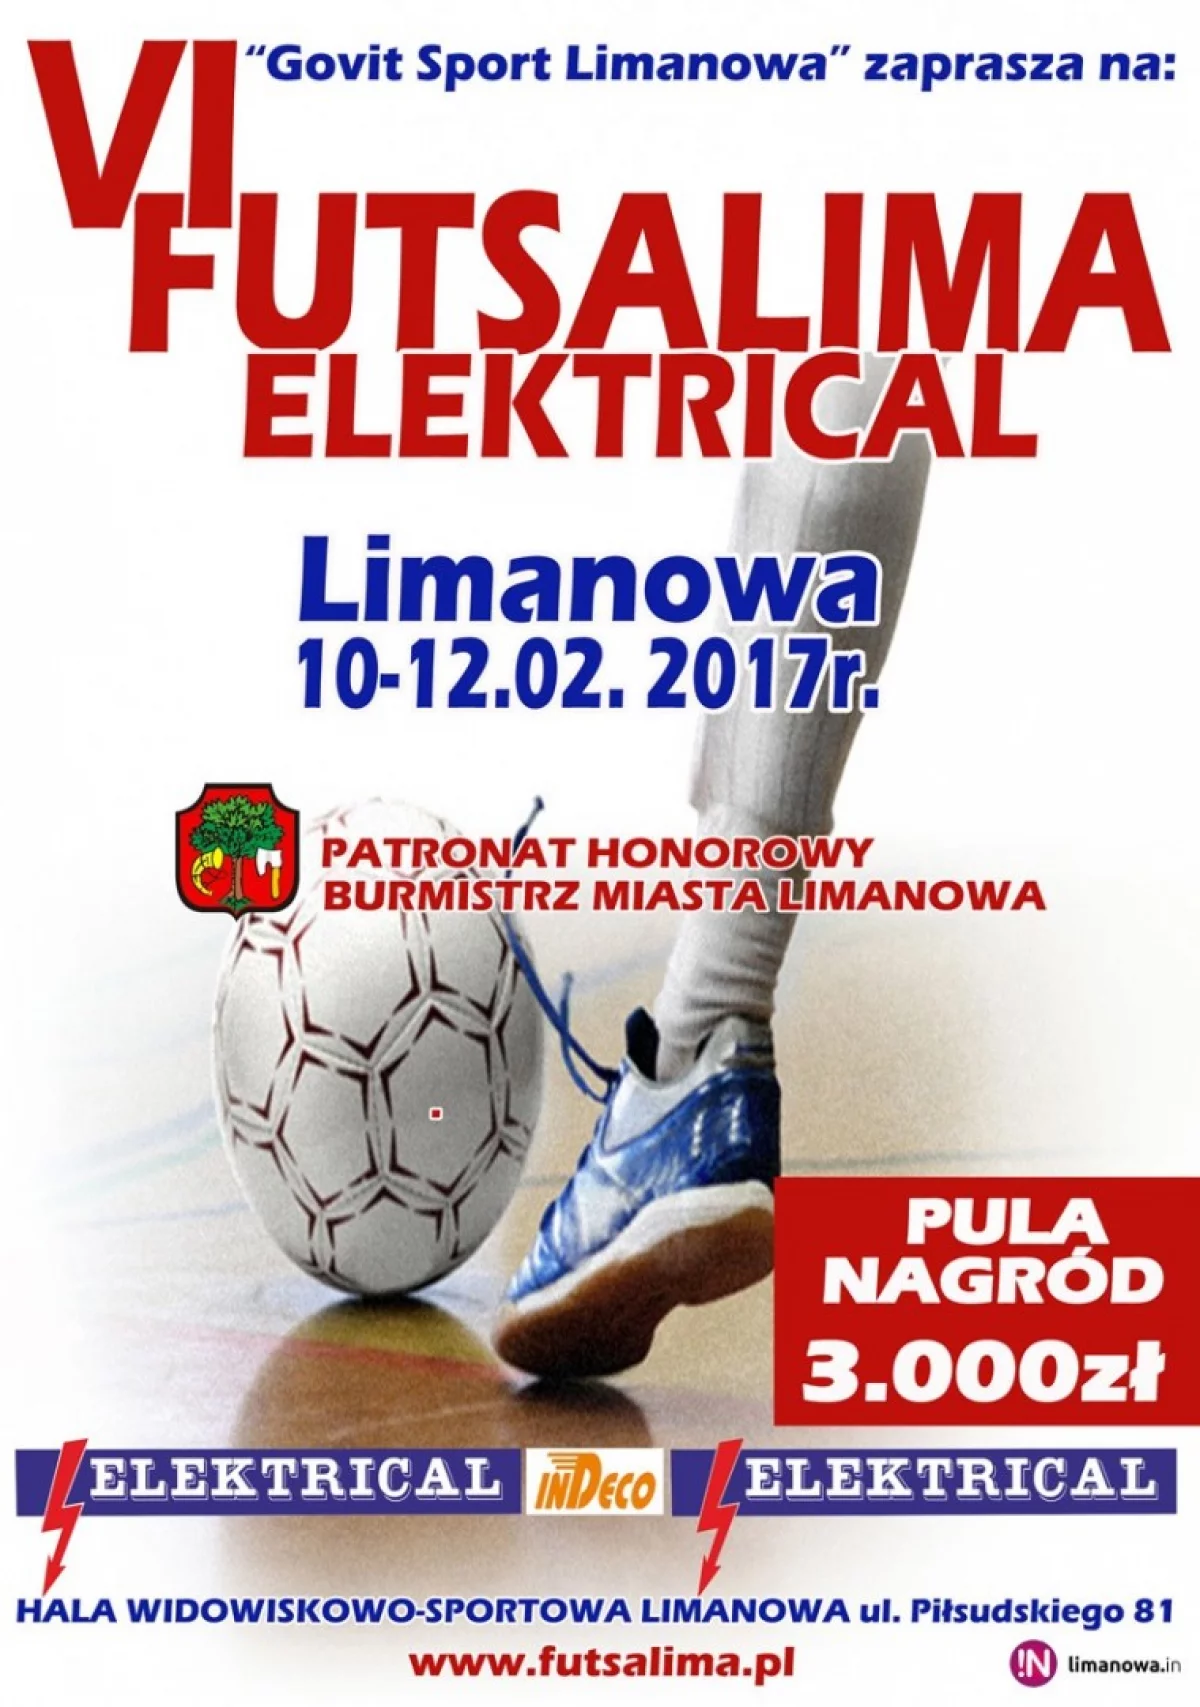 Ogólnopolski turniej futsalowy w Limanowej: sobota ostatnim dniem zgłoszeń.